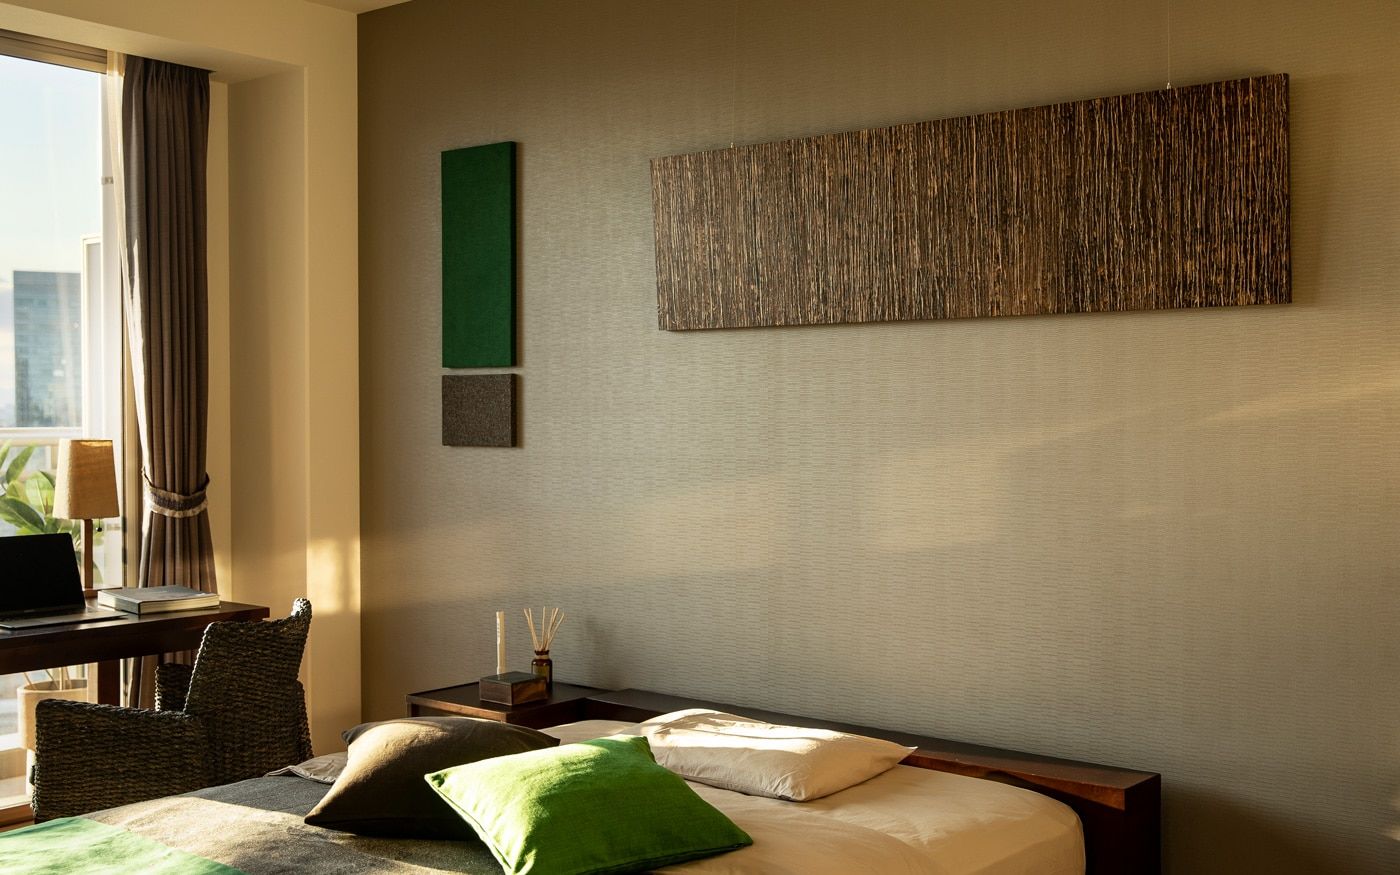 ホテルライクな寝室を演出する「壁面装飾・アートパネル」